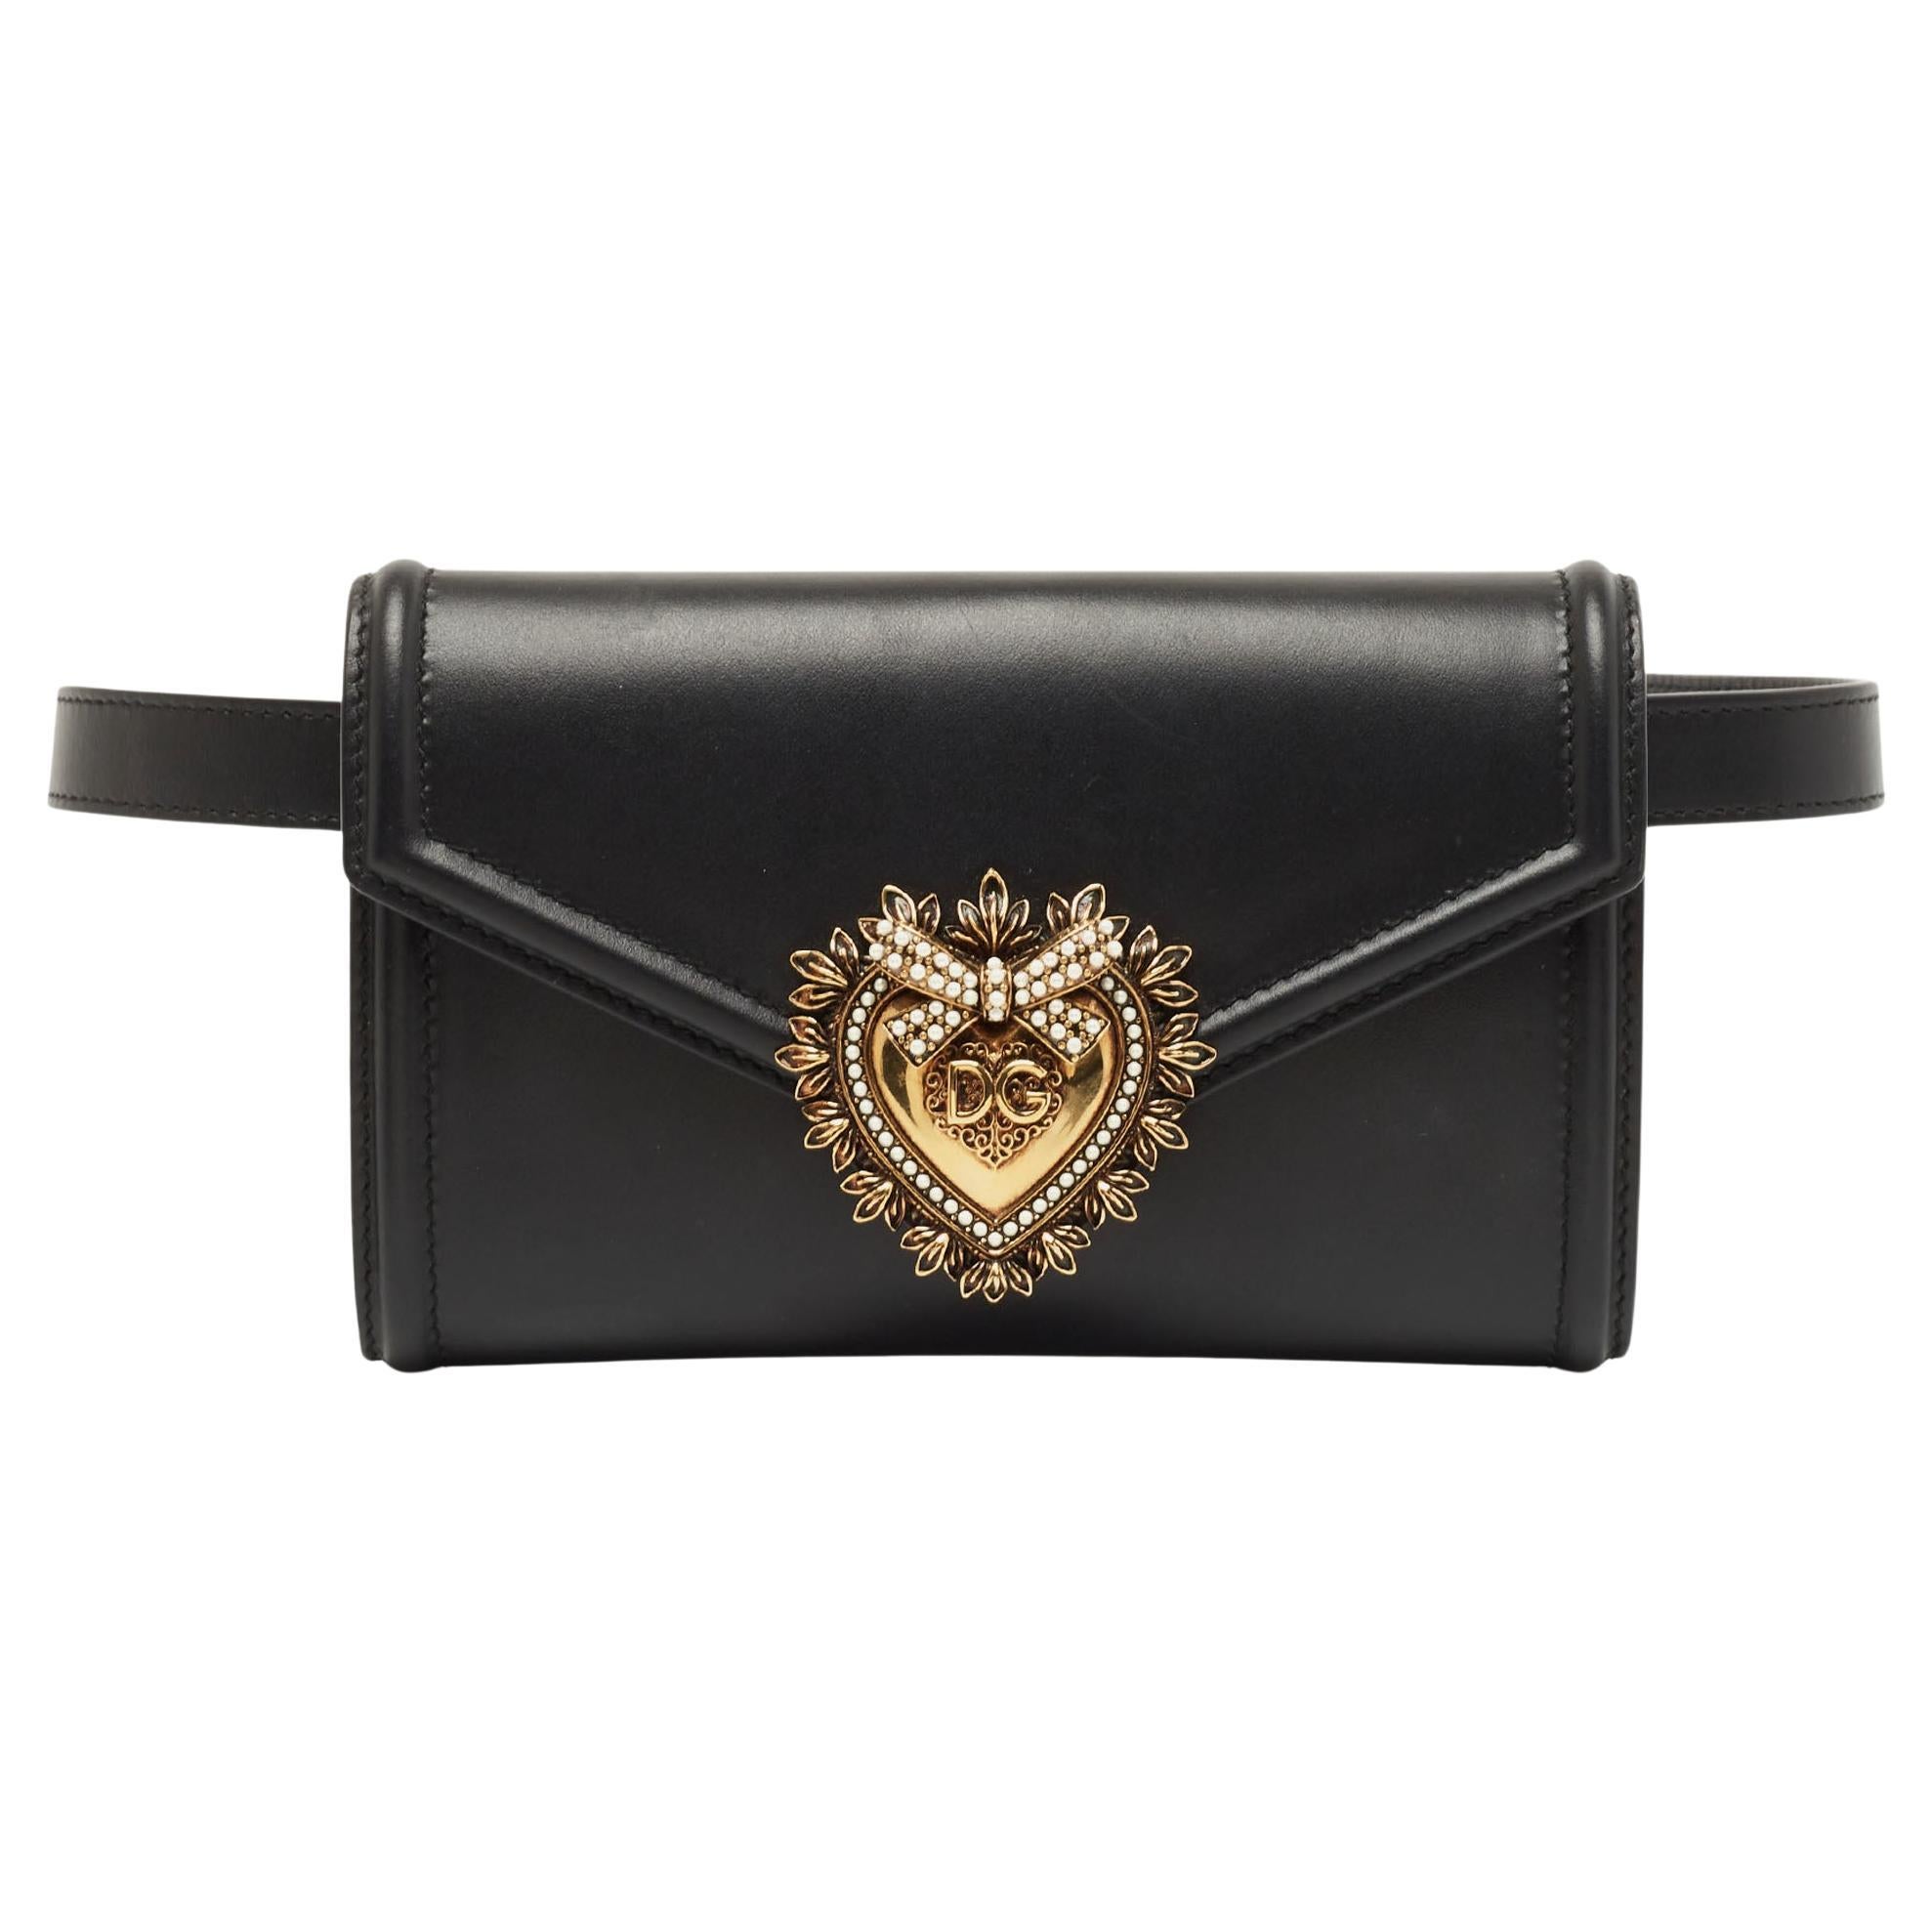 Dolce and Gabbana Black Leather Devotion Belt Bag